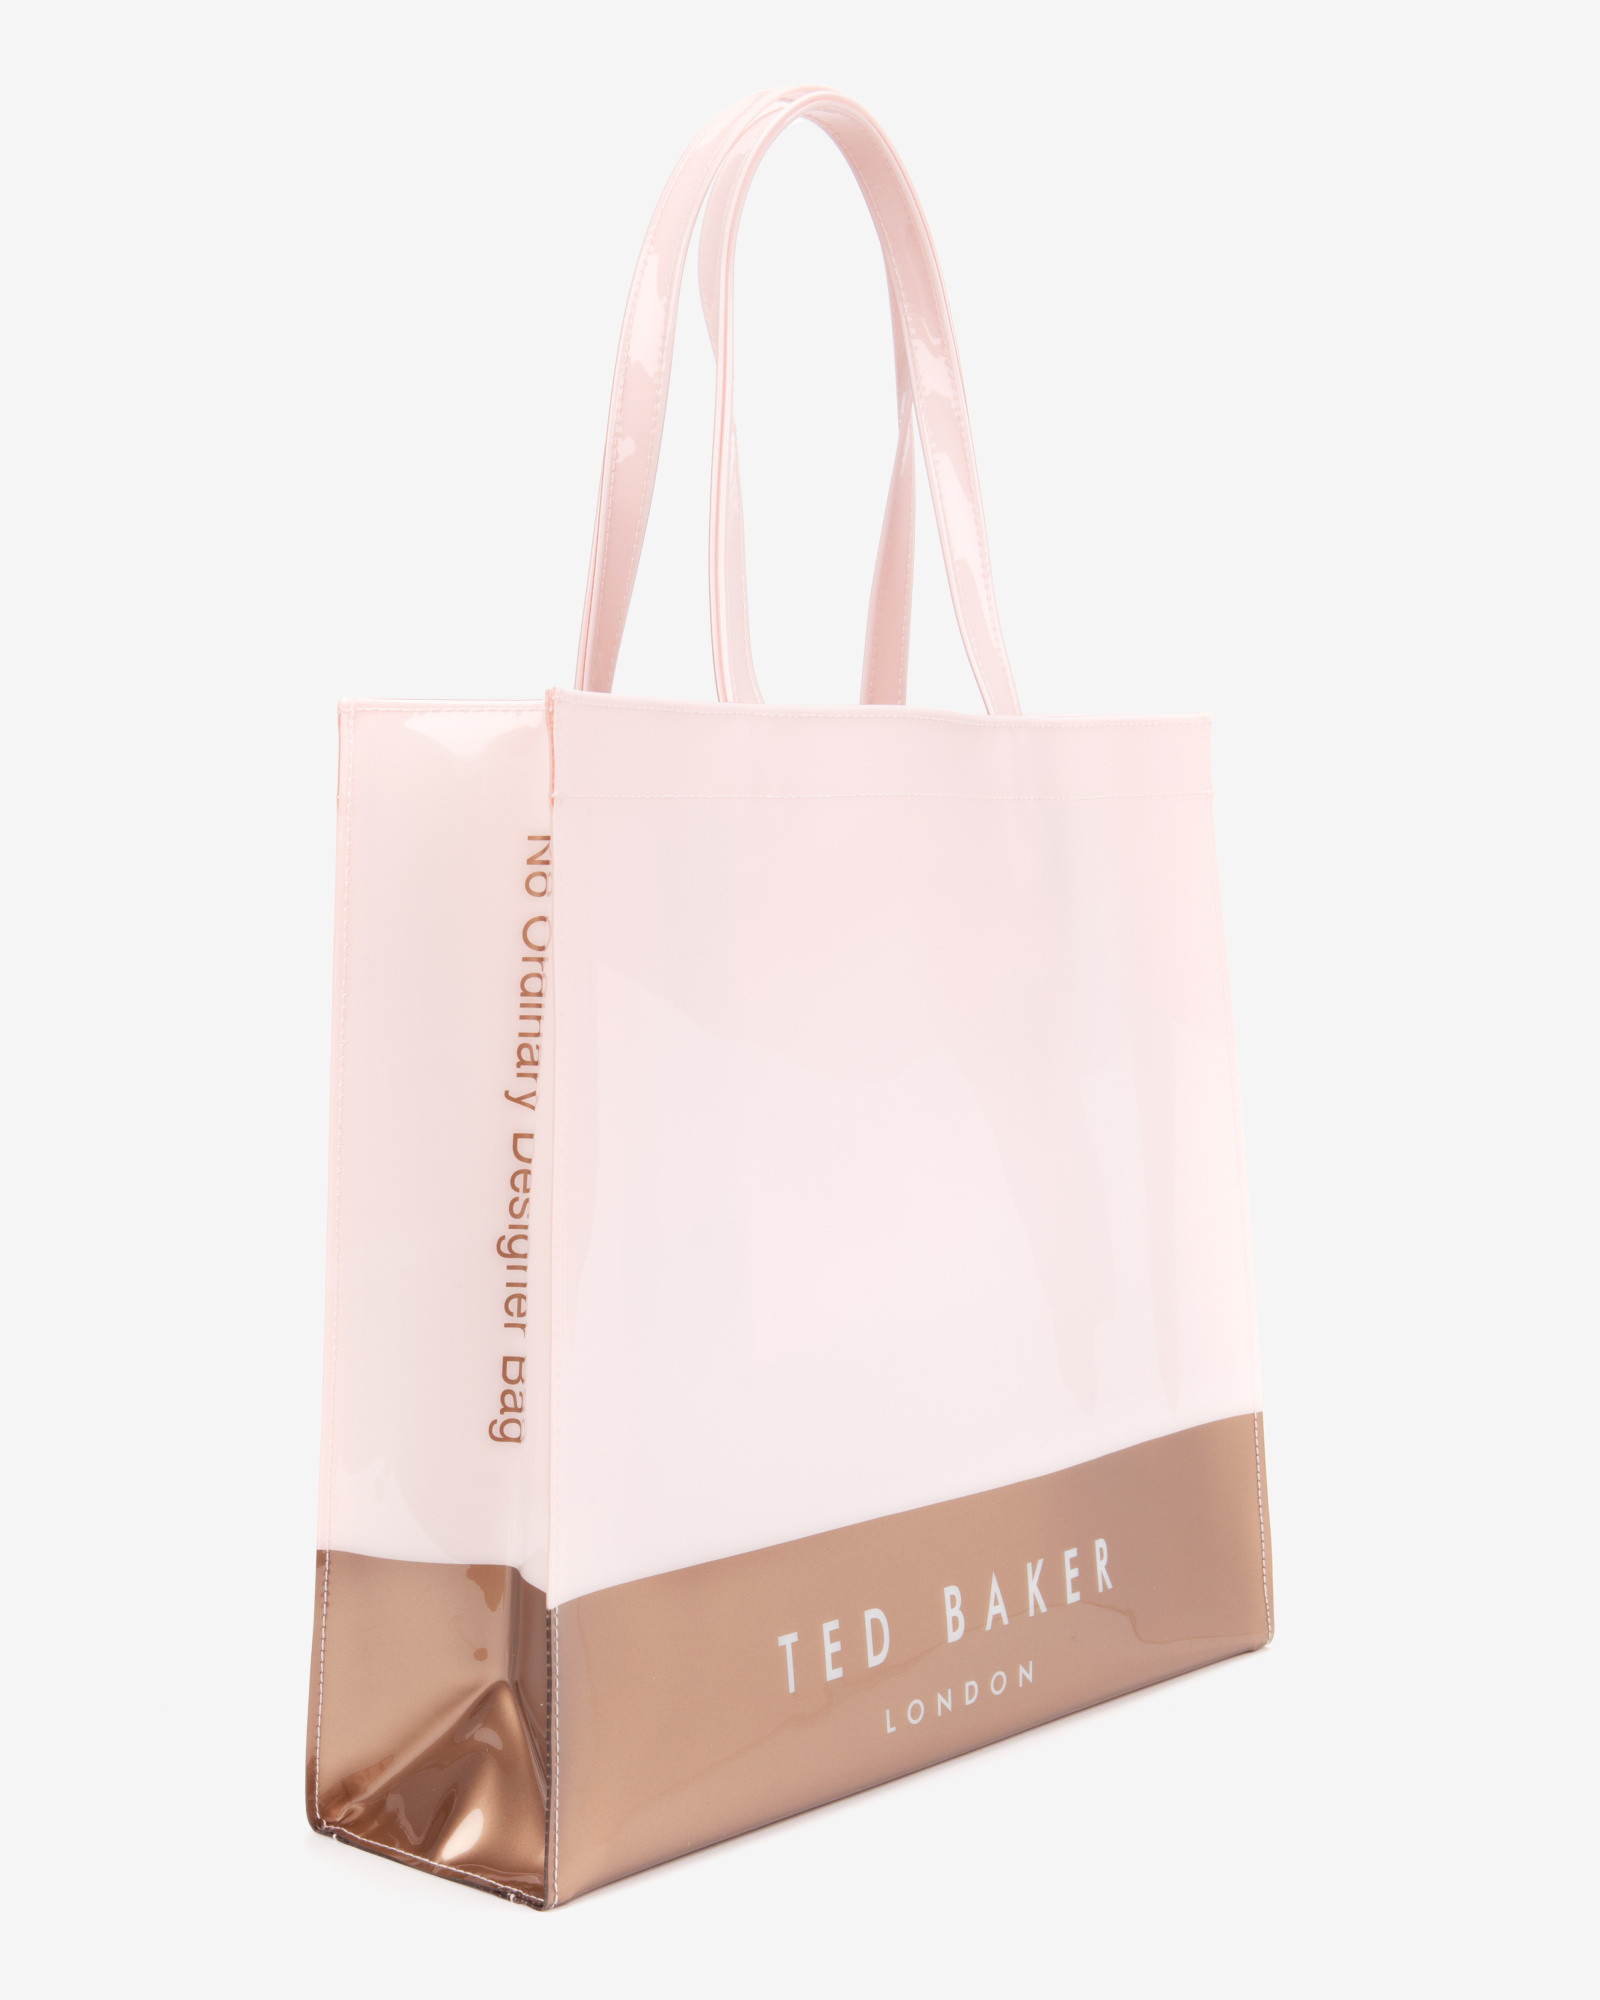 Ted Baker Large Color Block Shopper Bag in Dusky Pink (Pink) - Lyst